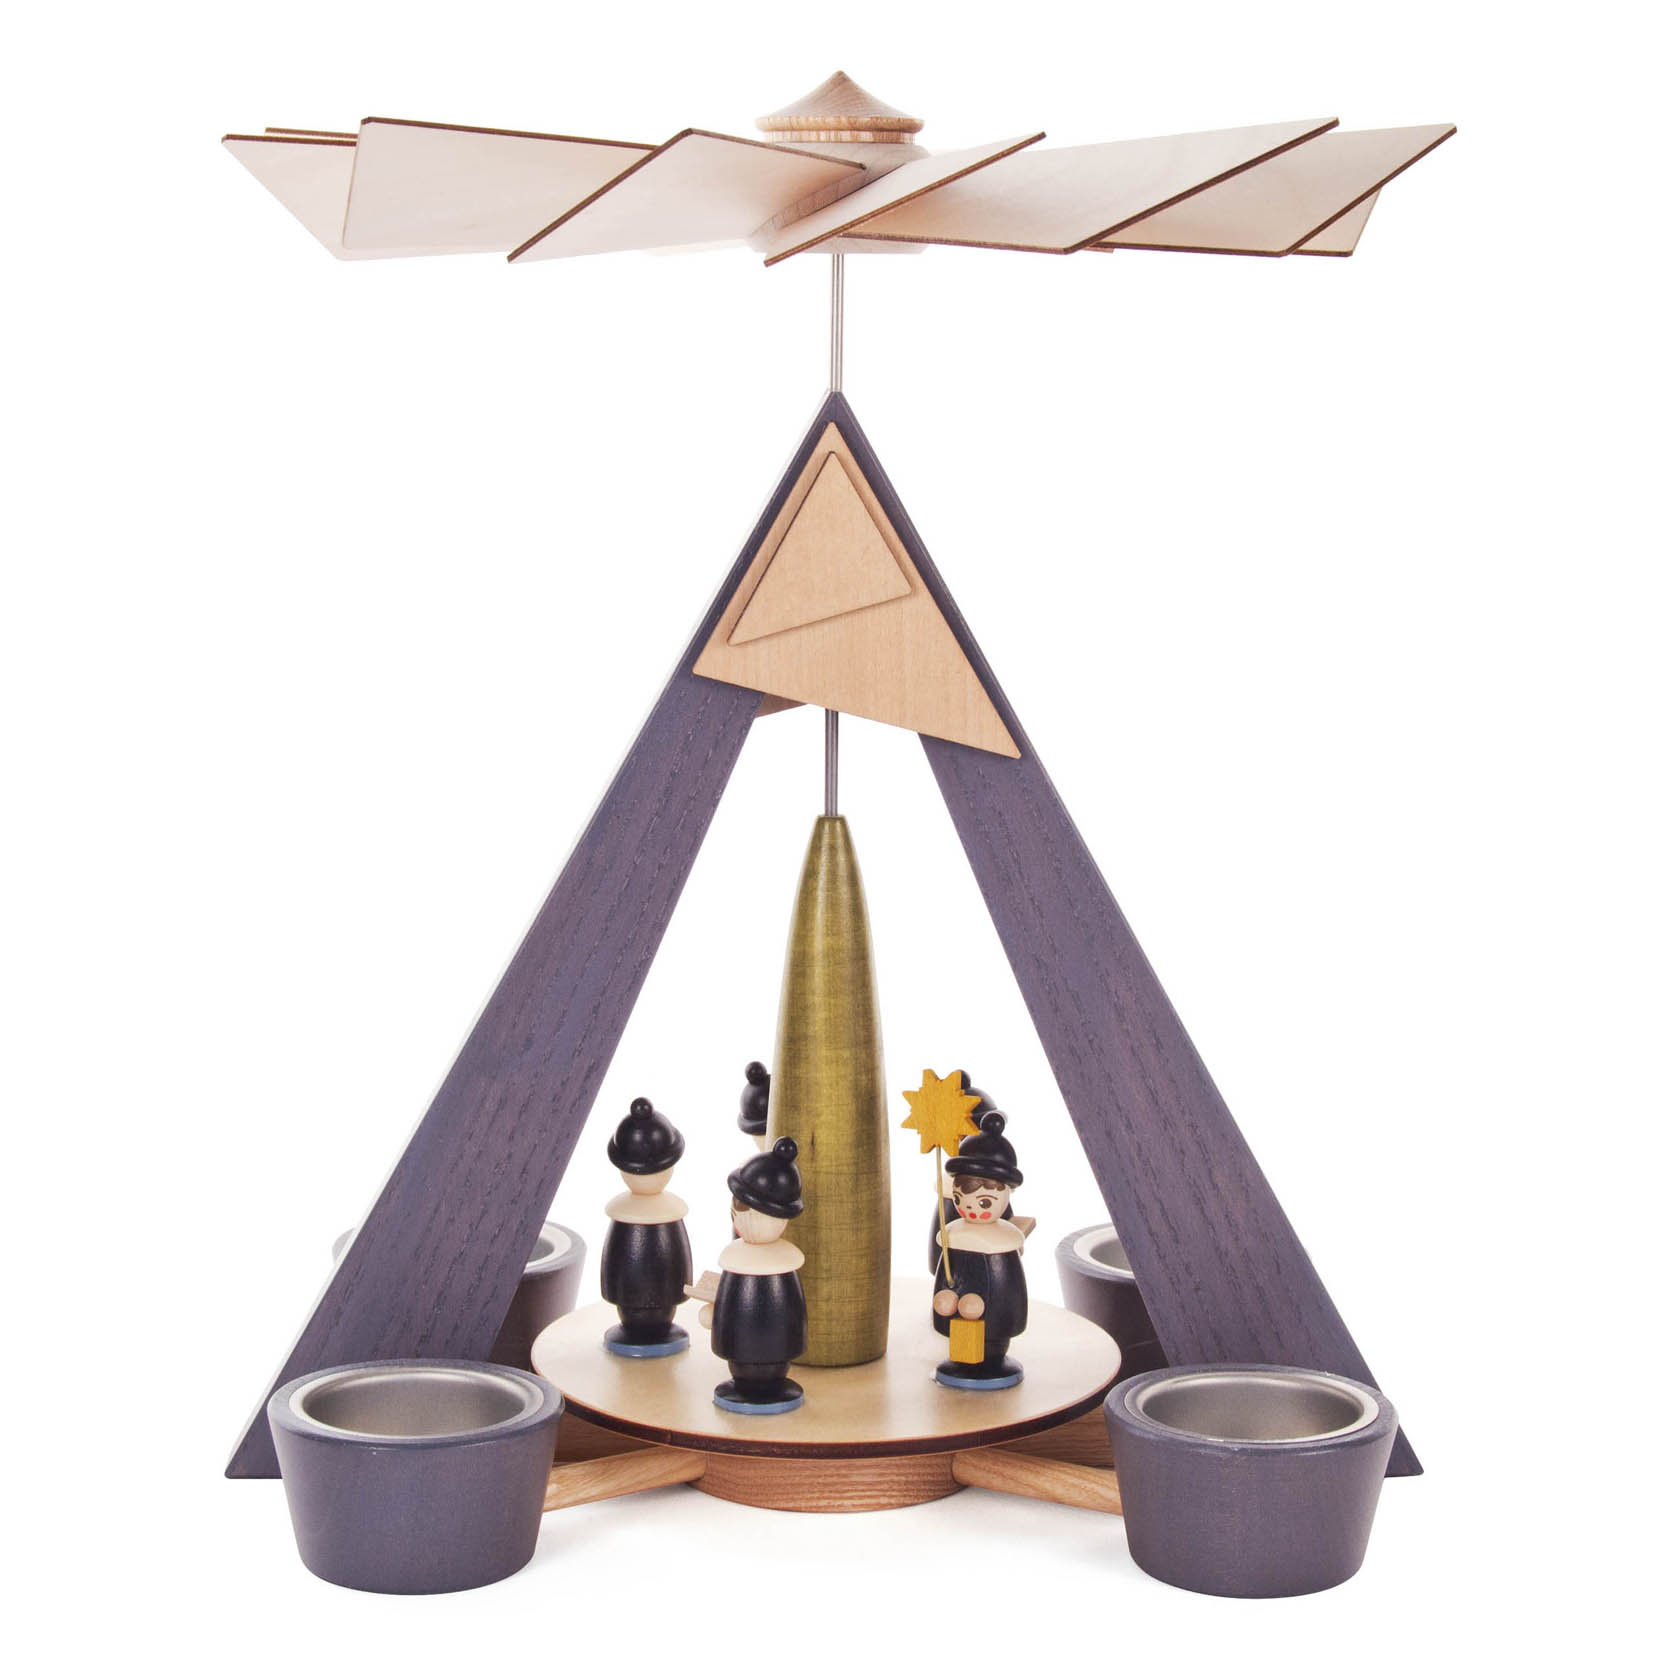 Pyramide mit Kurrende, grau mit farbigen Figuren, für Teelichte im Dregeno Online Shop günstig kaufen